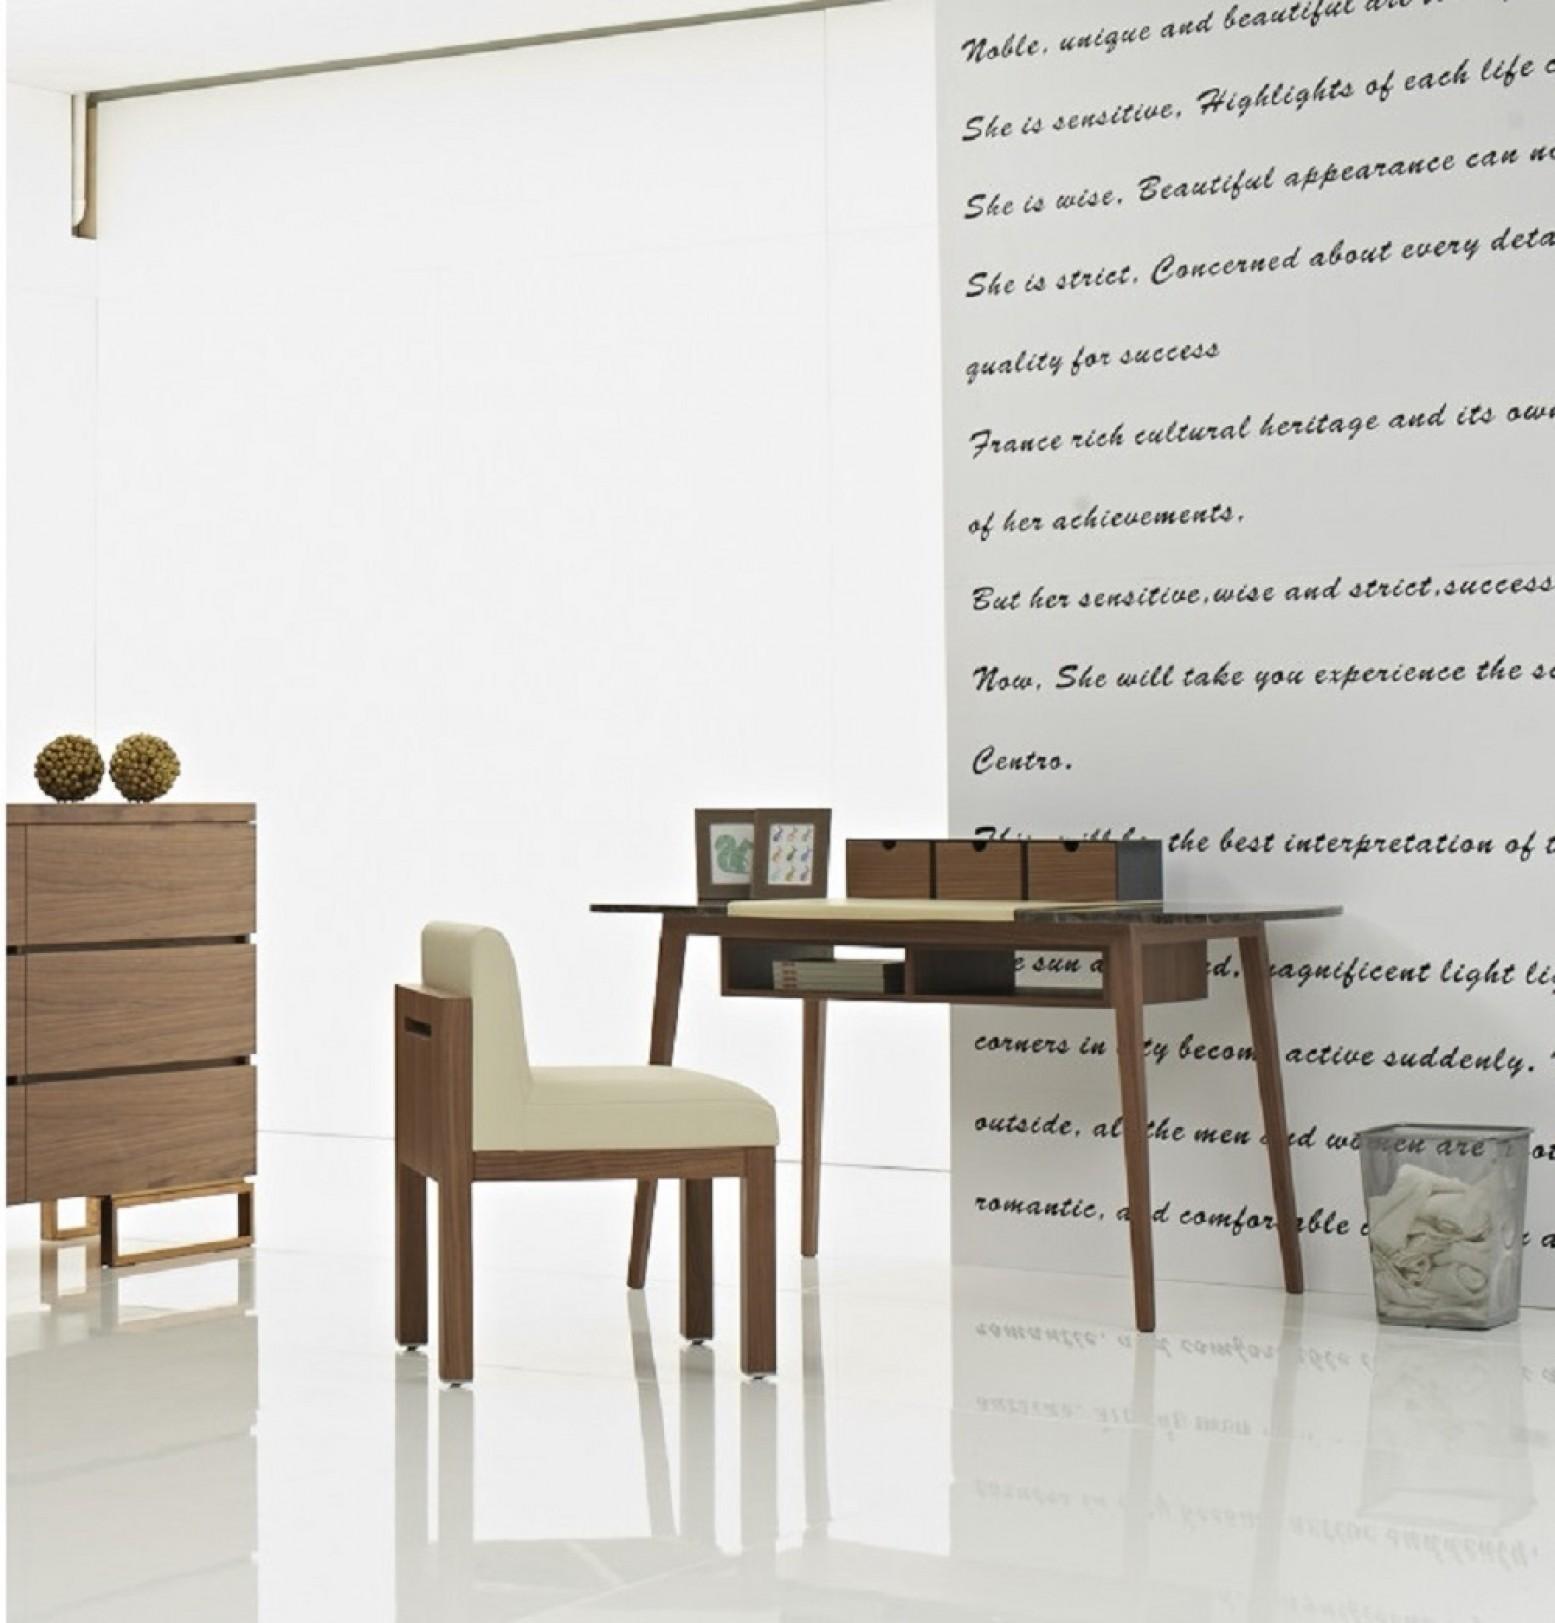 KD002 Modern Office Desk in Matte Gray by J&M Furniture